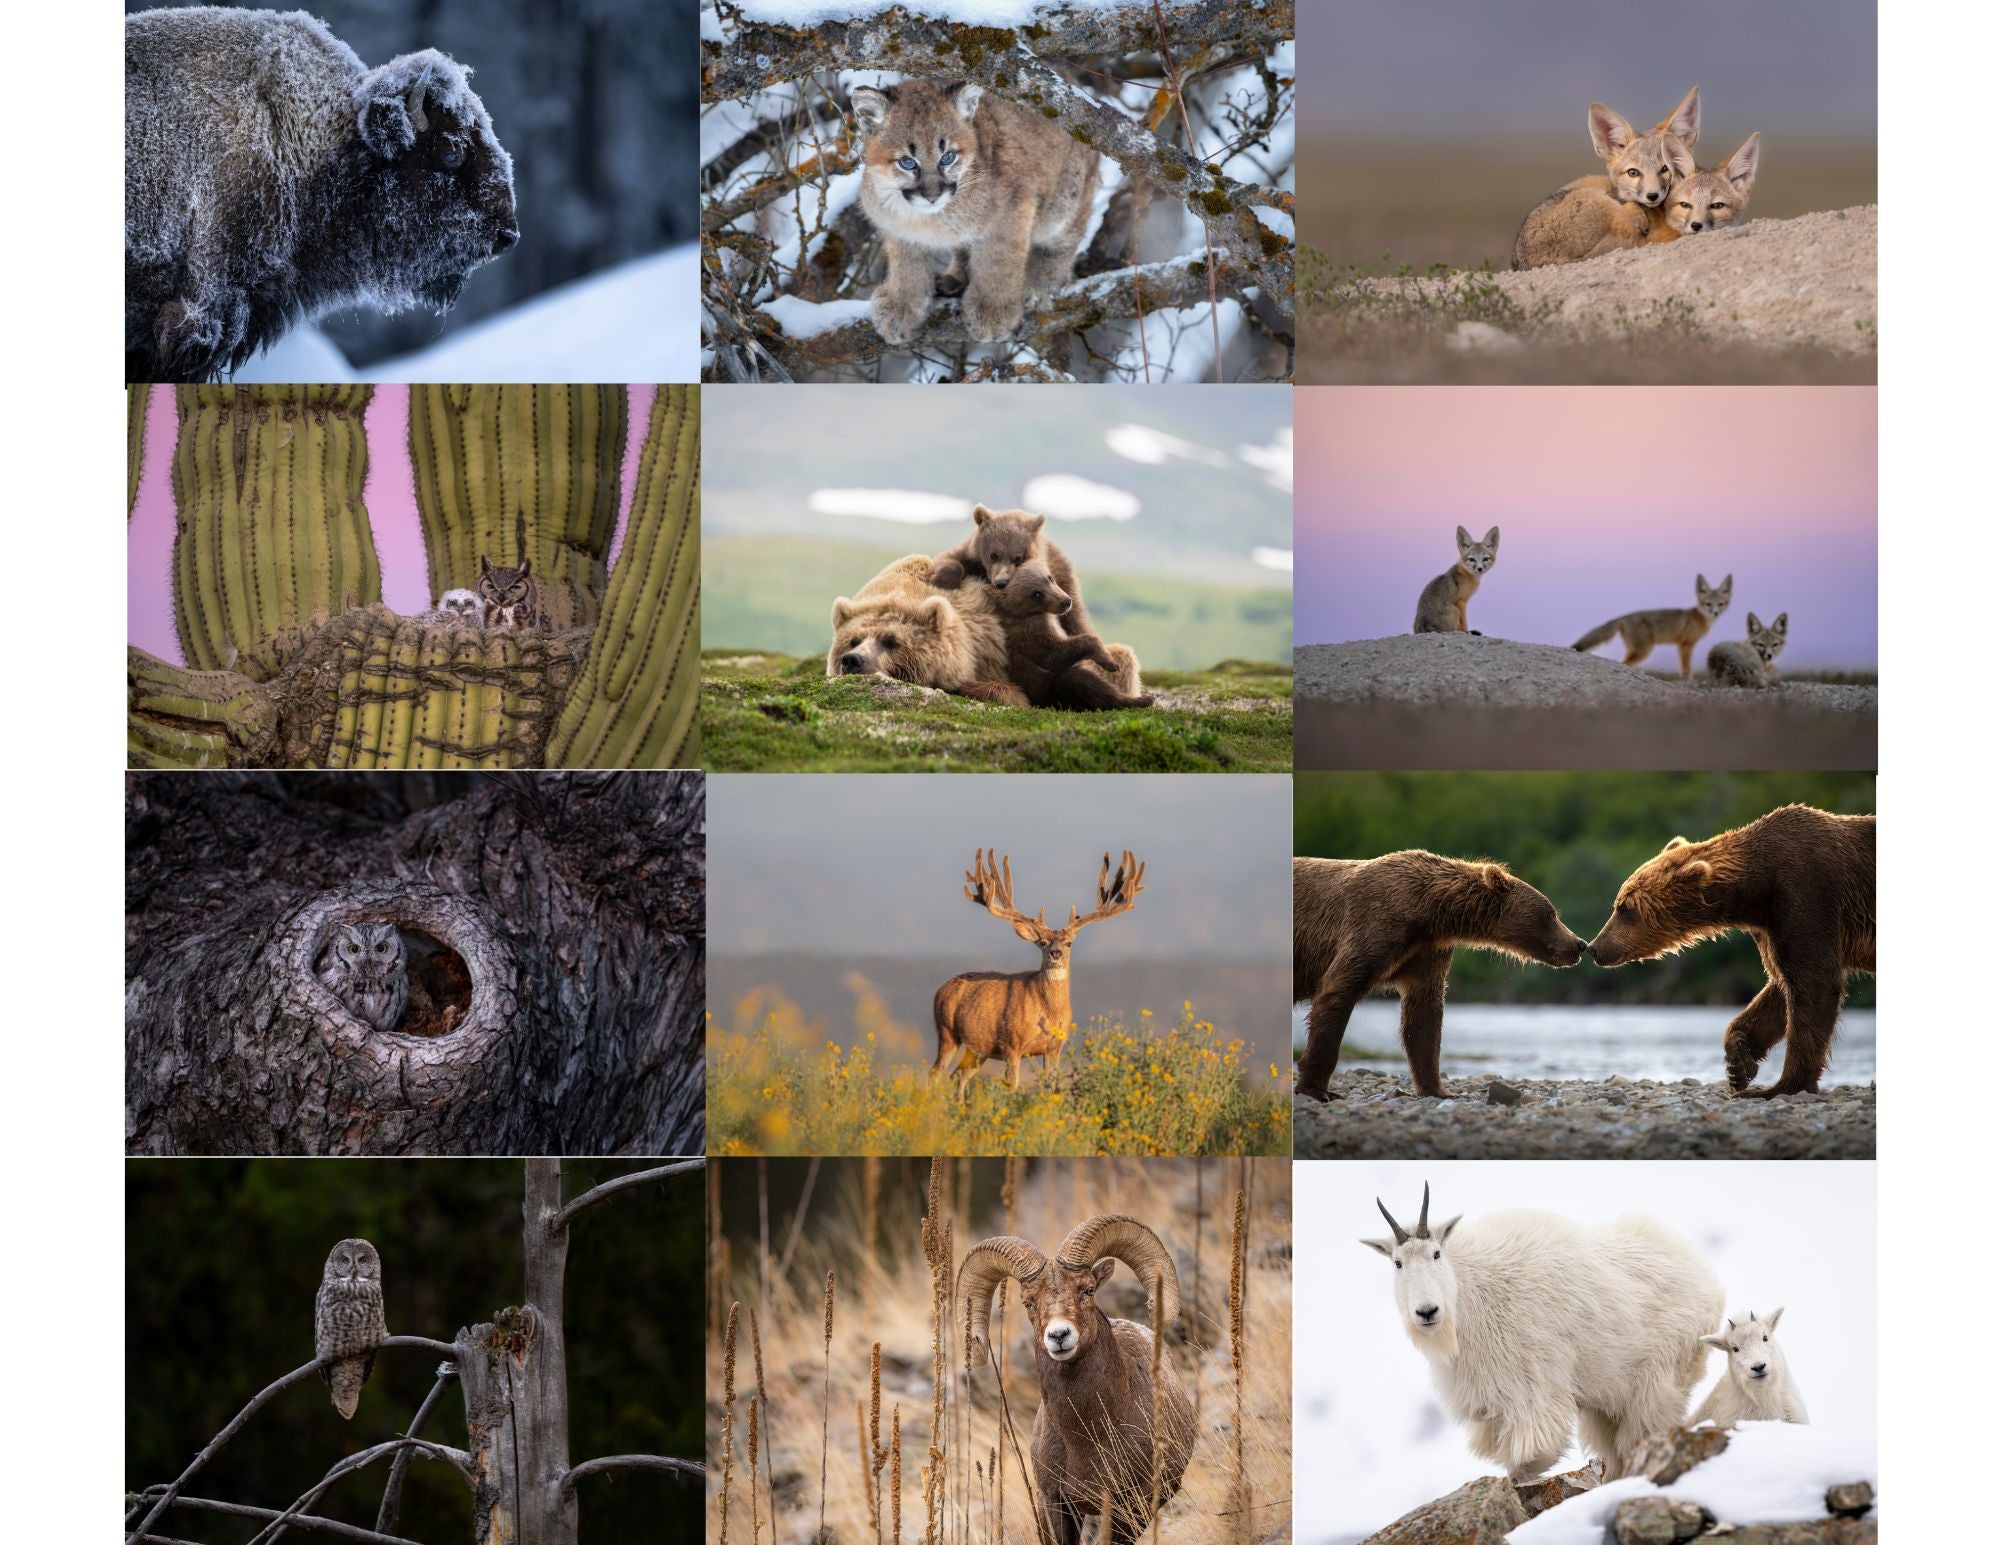 2024 Wildlife Calendar